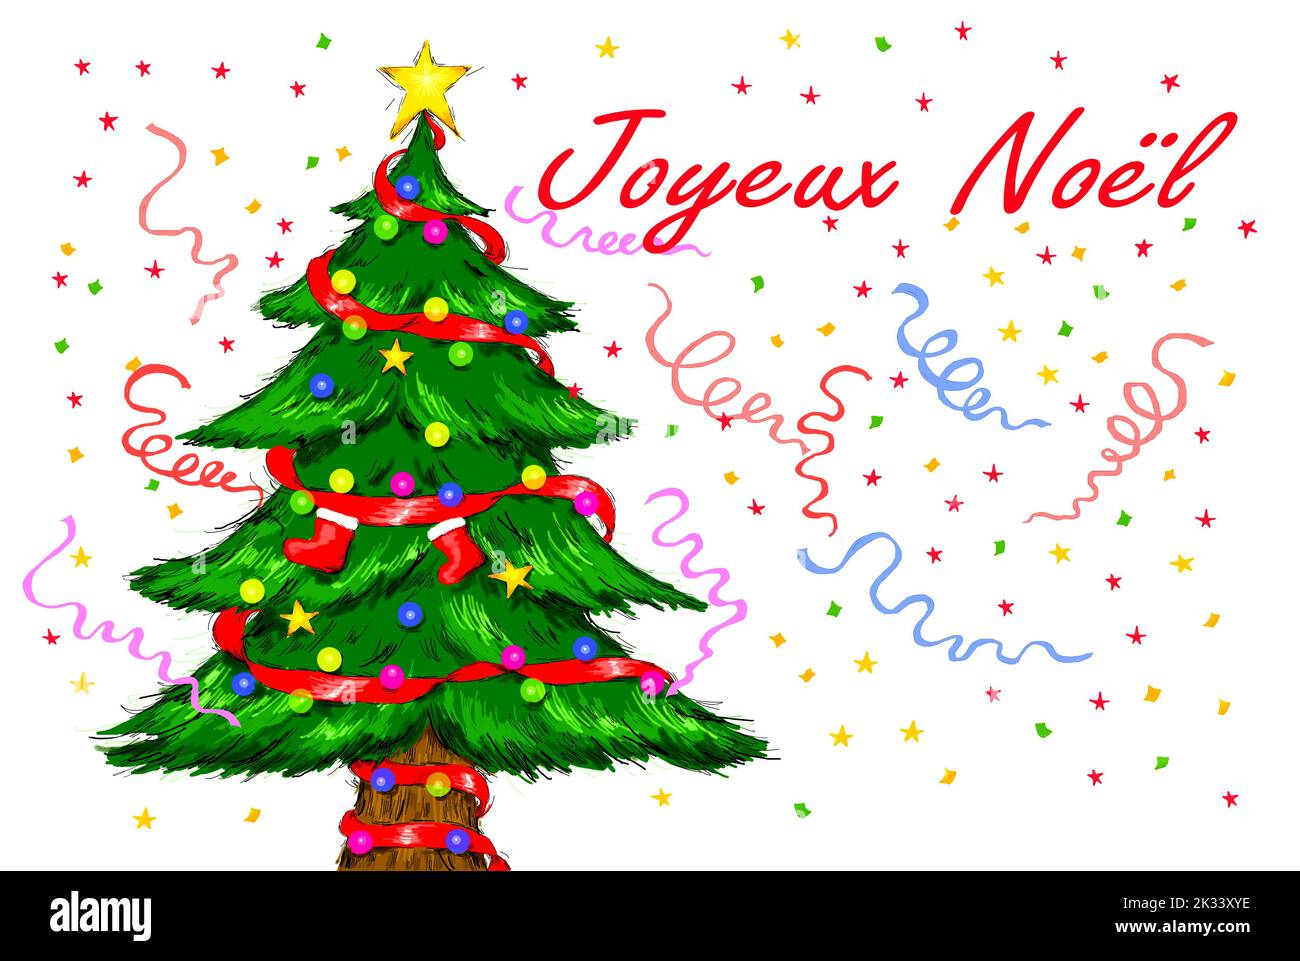 A Christmas Tree Celebrating Joyeux Noel. Stock Photo